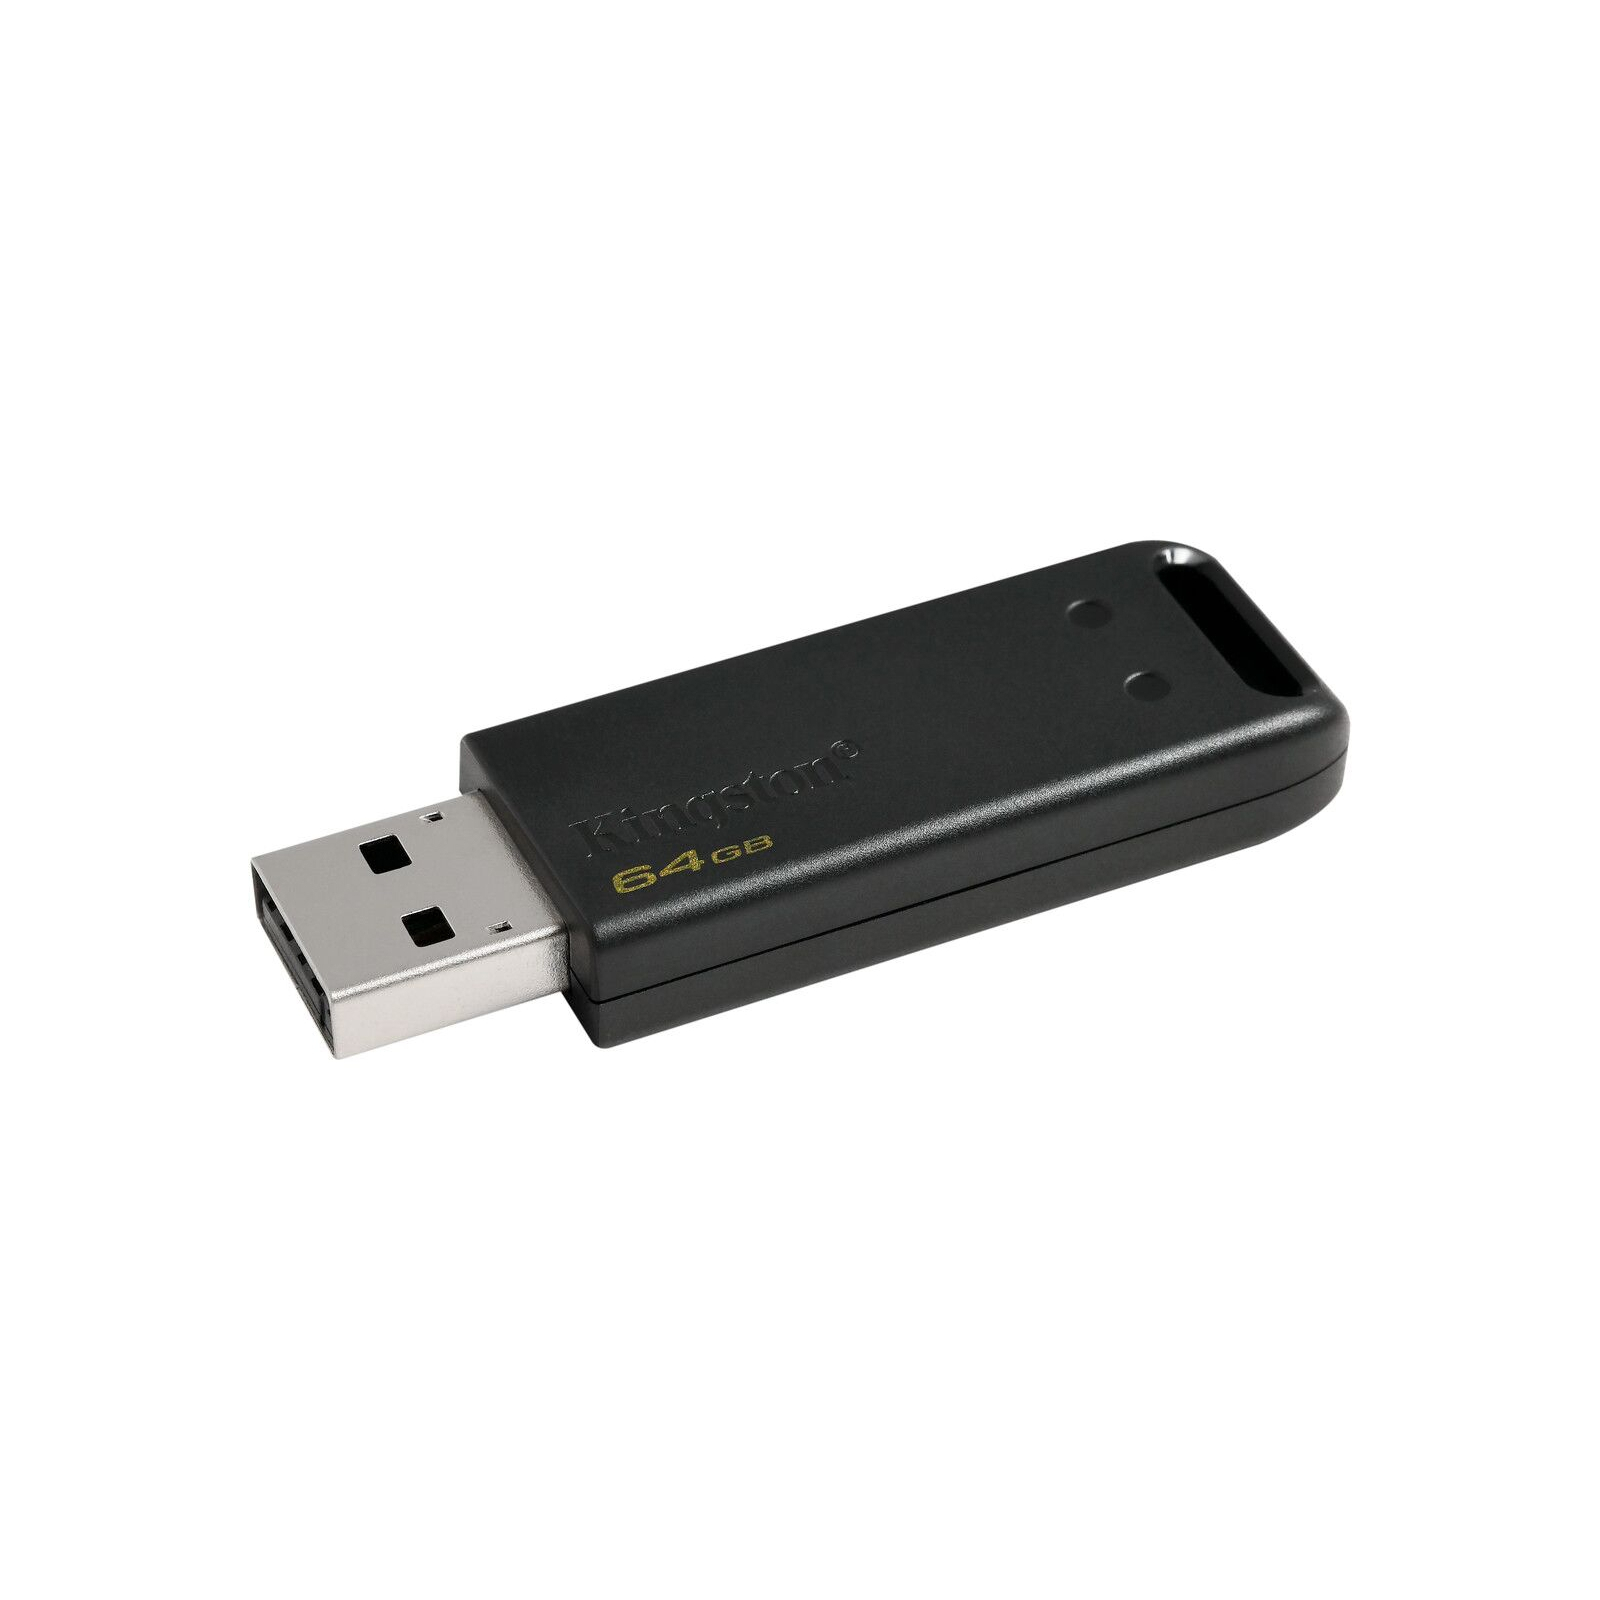 USB флеш накопичувач Kingston 64GB DataTraveler 20 USB 2.0 (DT20/64GB) зображення 2